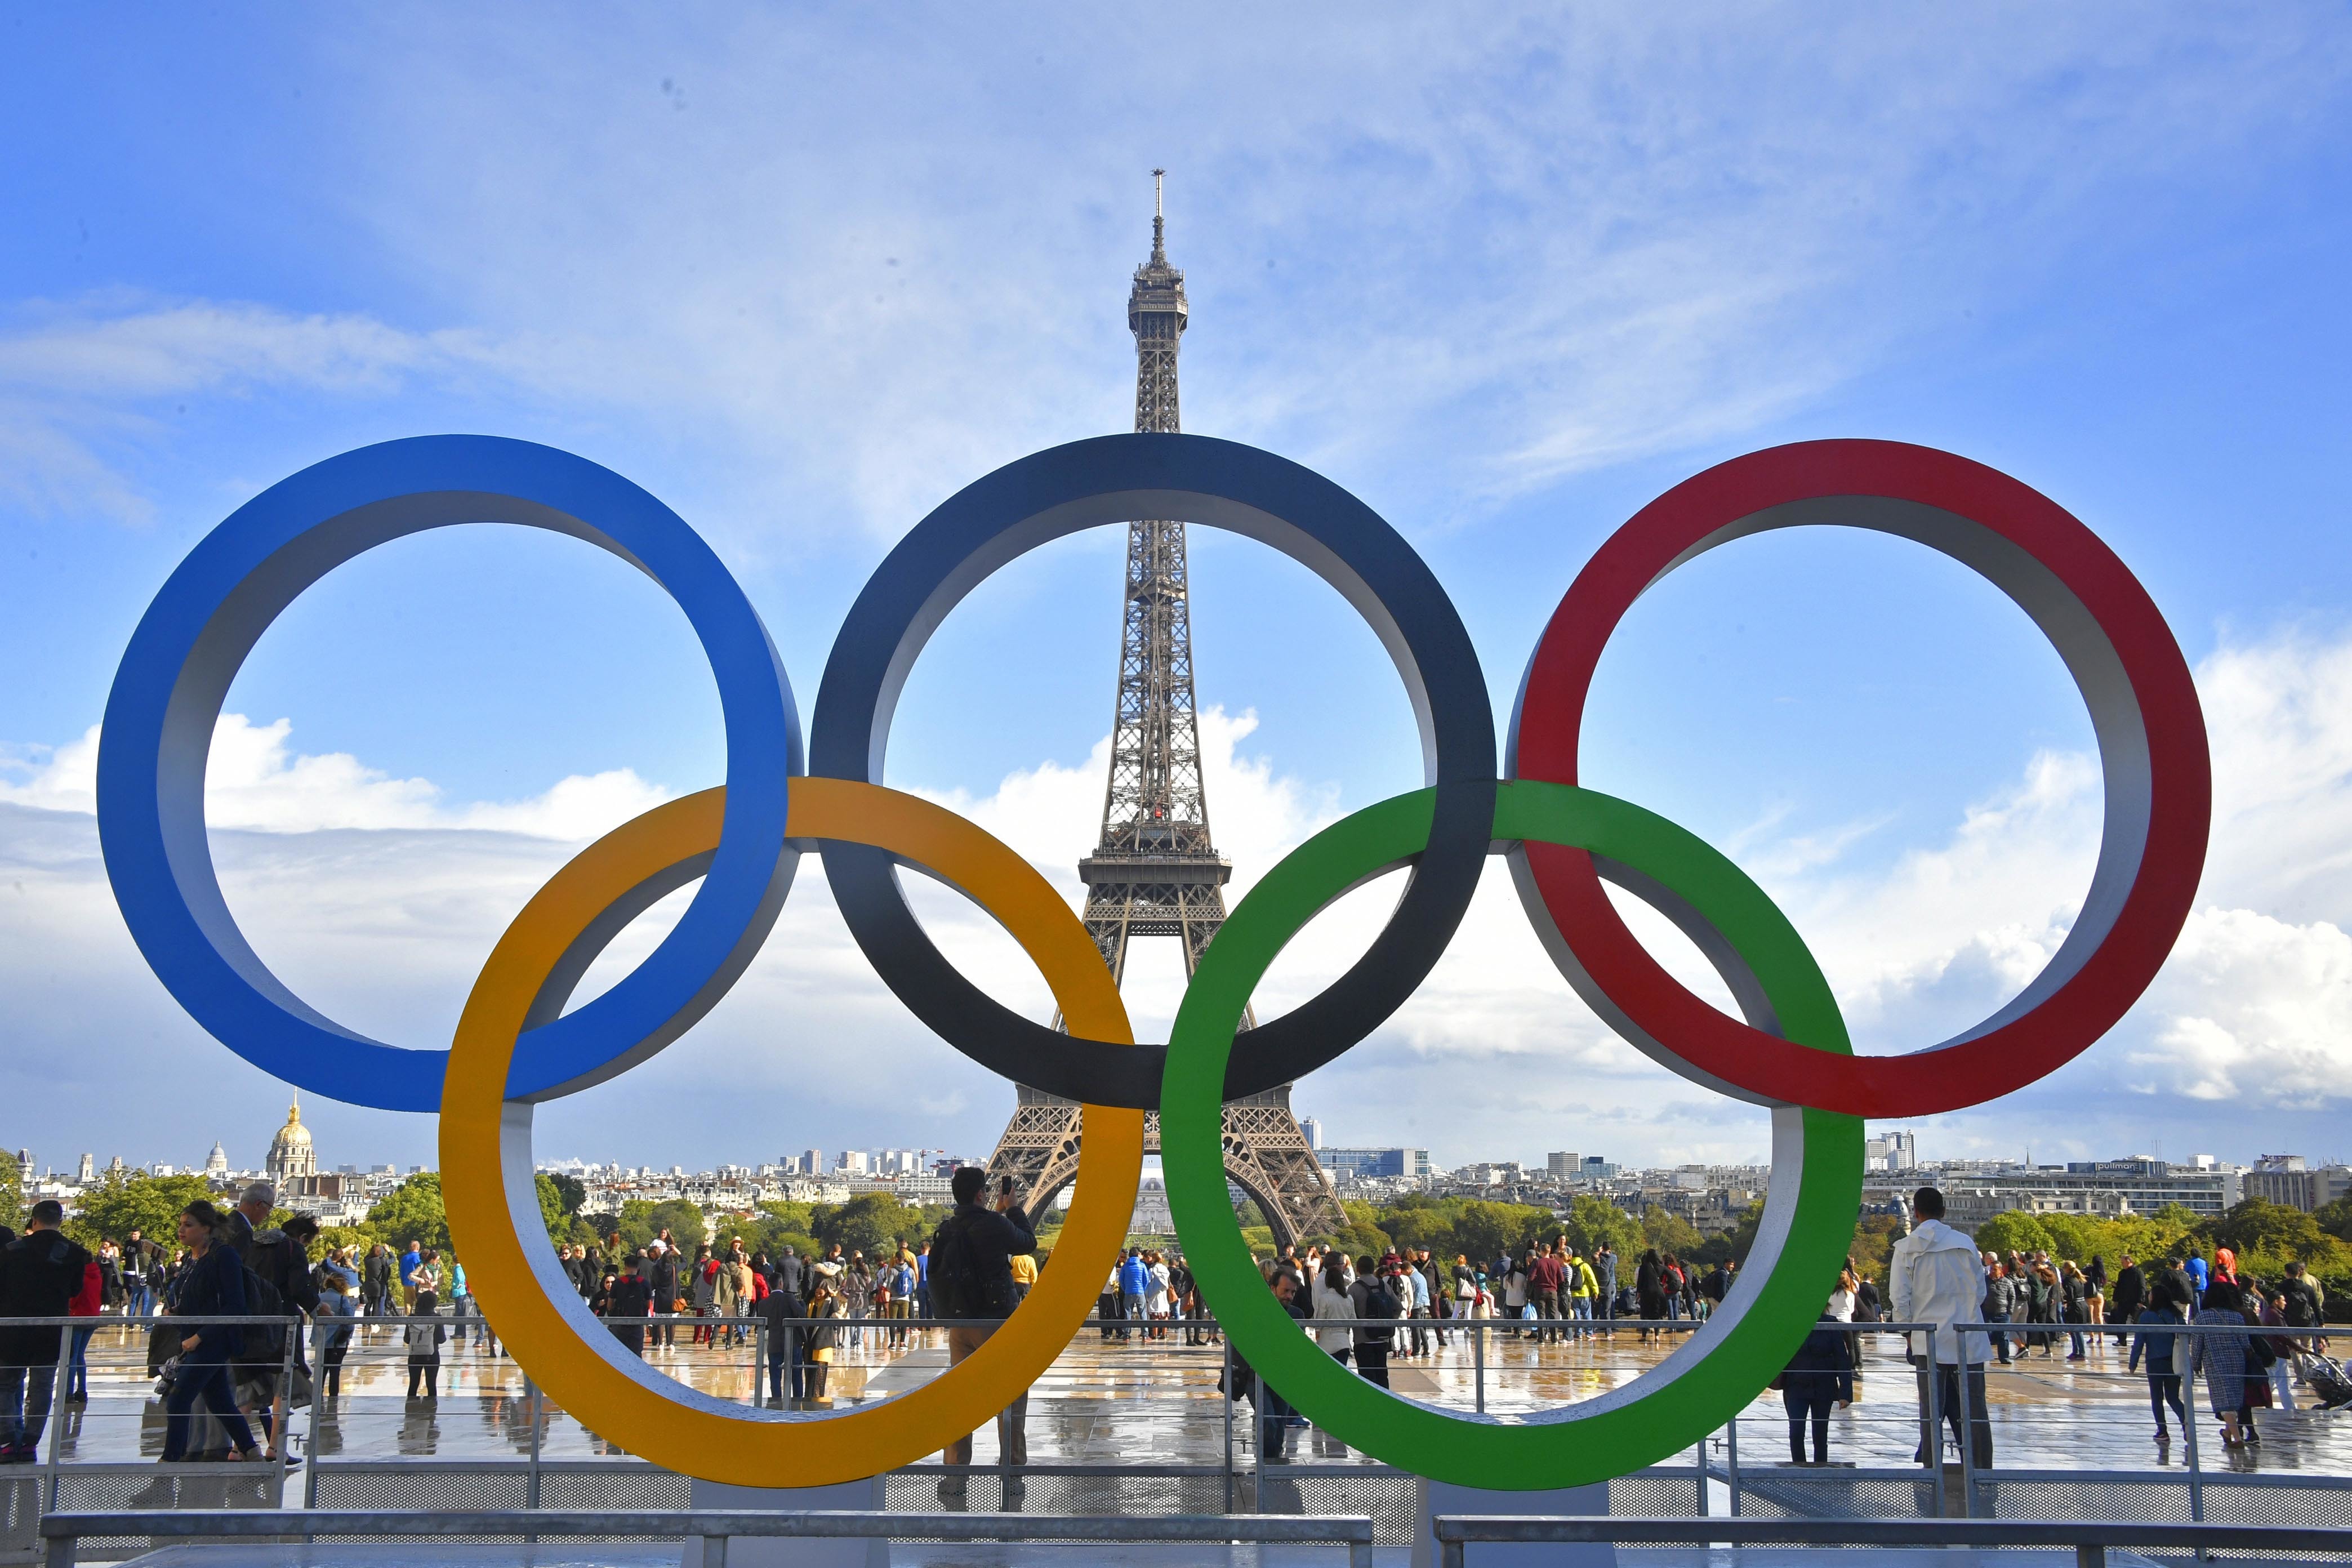 ILLUSTRATION. Les Jeux olympiques de Paris 2024 sont attendus par les Français, amateurs de sport ou non. Mais ces derniers s'inquiètent aussi pour des sujets comme les transports ou la sécurité.